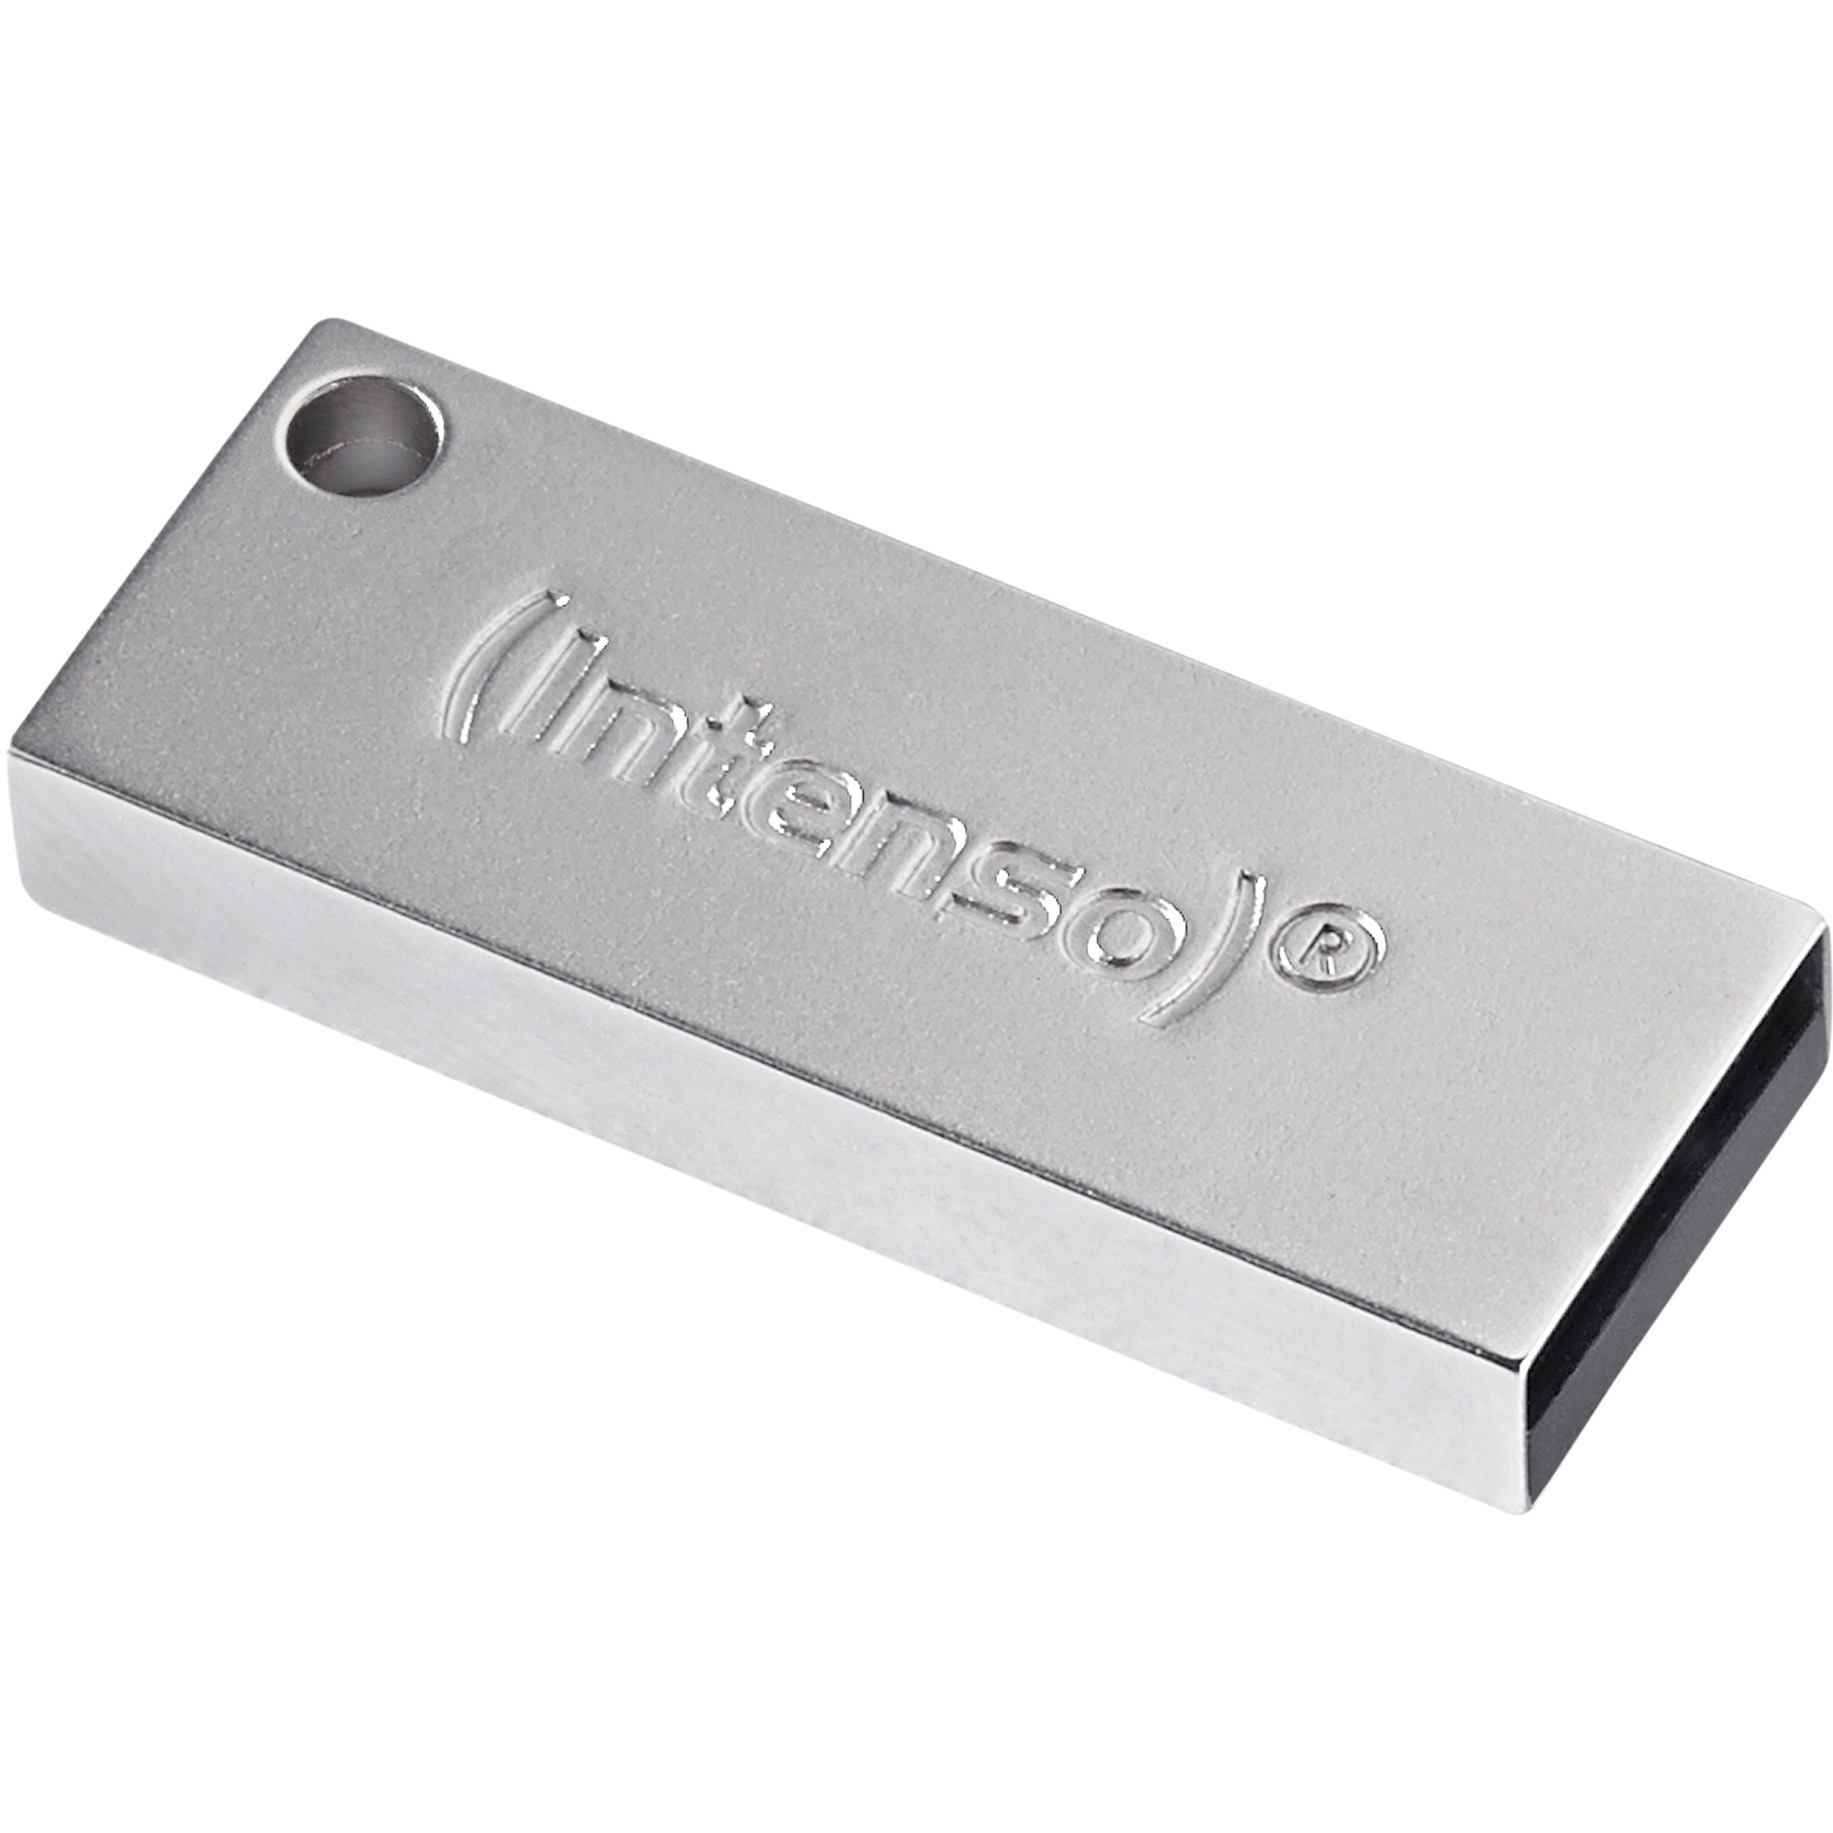 Image of Alternate - Premium Line 16 GB, USB-Stick online einkaufen bei Alternate